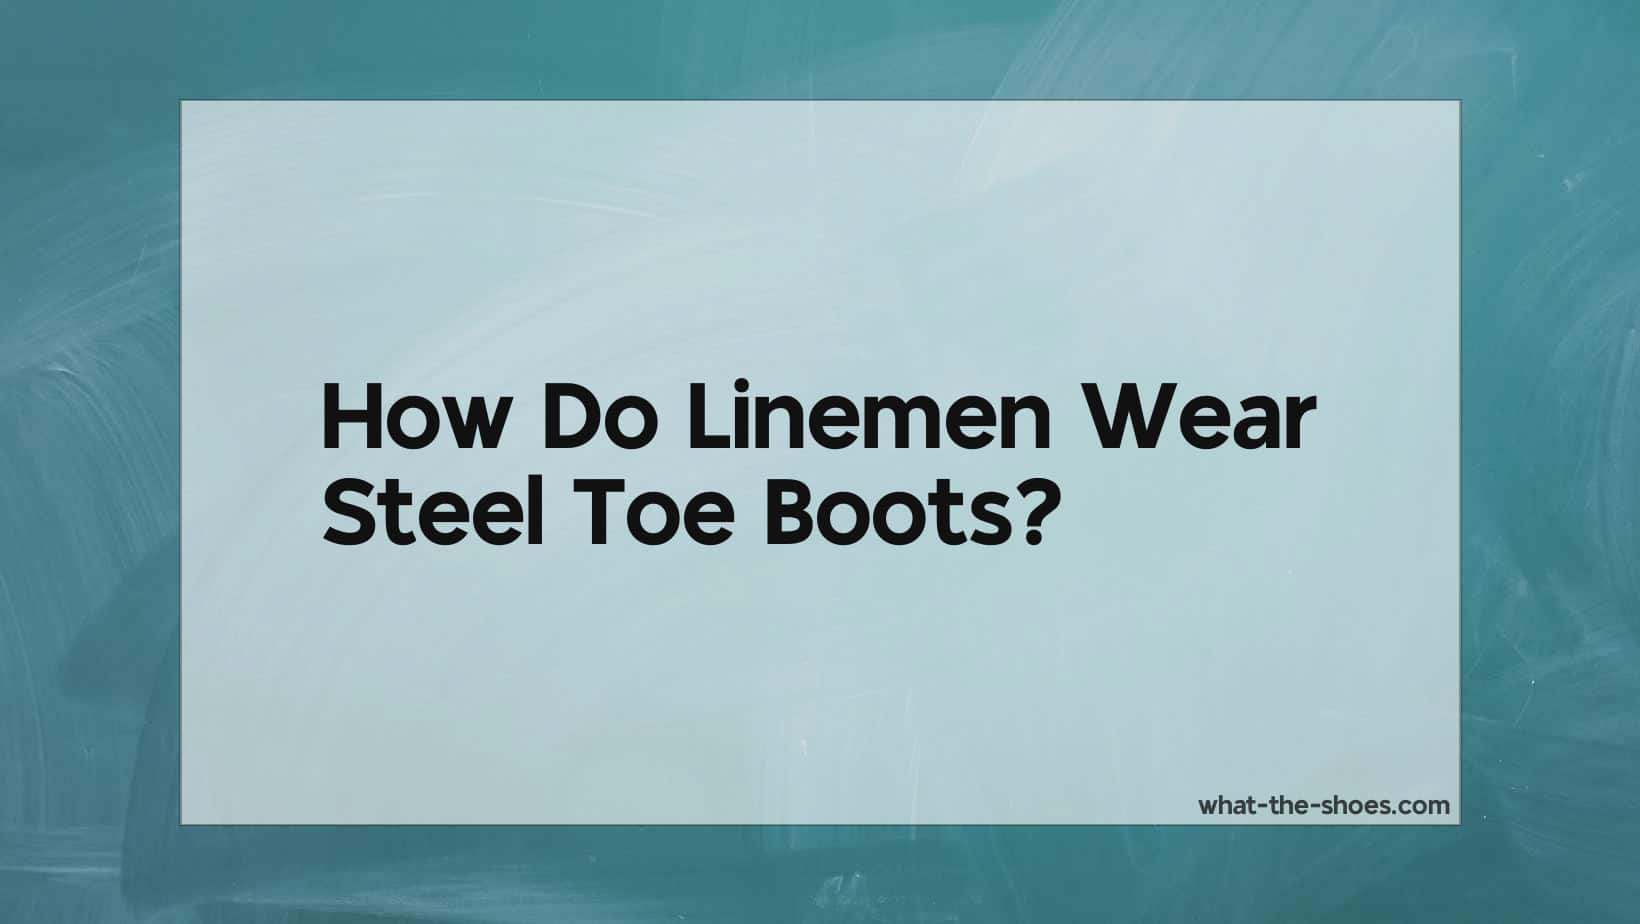 Do Linemen Wear Steel Toe Boots? Why?